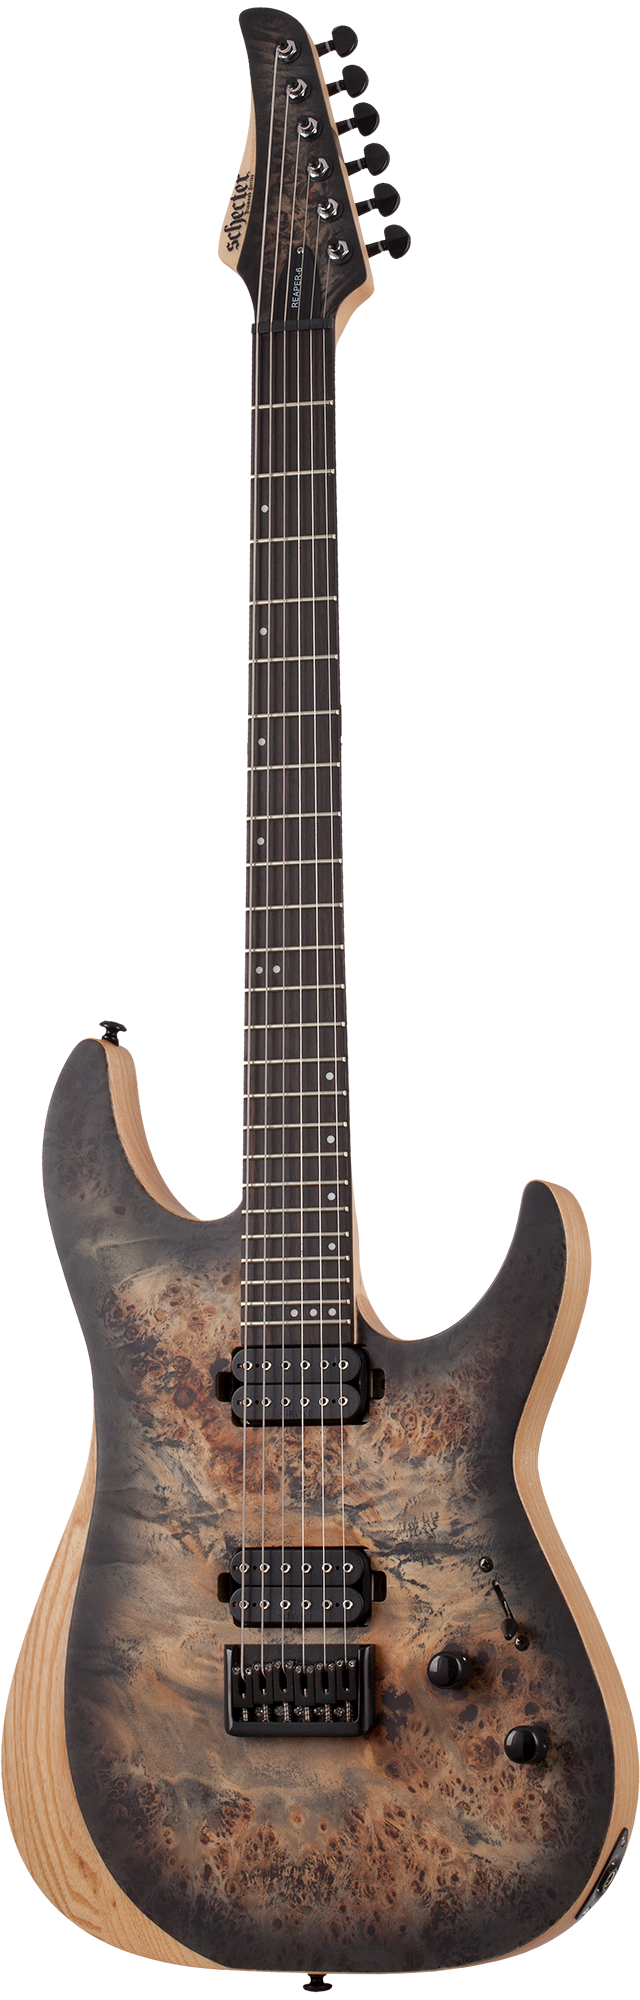 Schecter Reaper-6 Charcoal Burst гитара электрическая шестиструнная, цвет матовый древесный бёрст